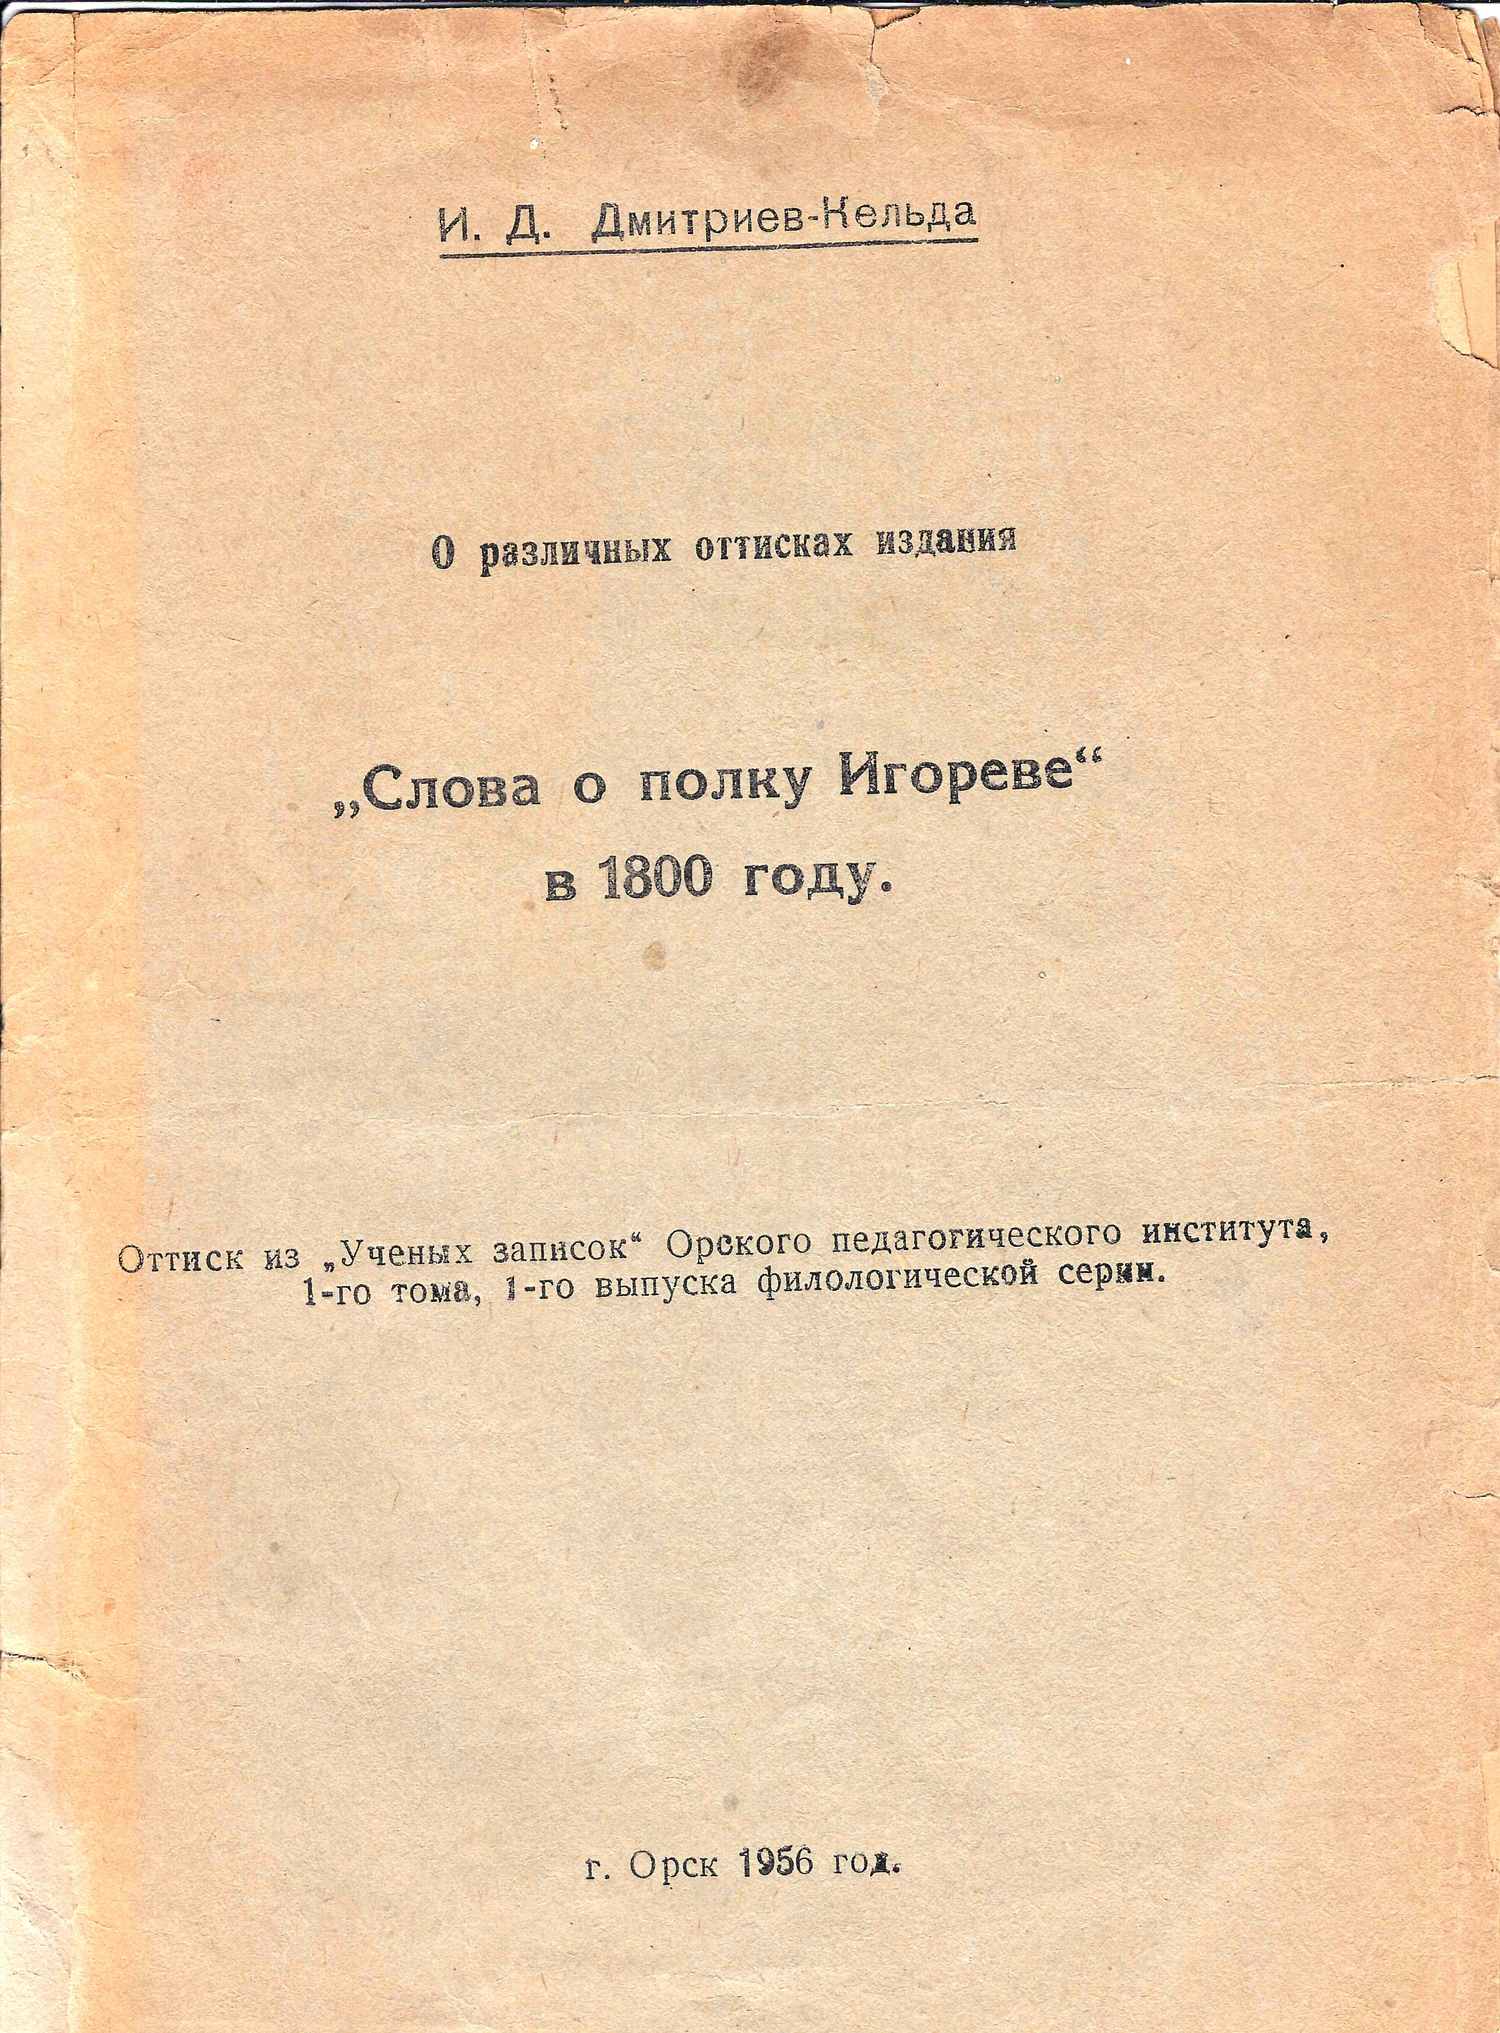 Четыре редких издания и собственноручное письмо Иннакея Дмитриевича Дмитриева-Кельды. 1950-е годы.